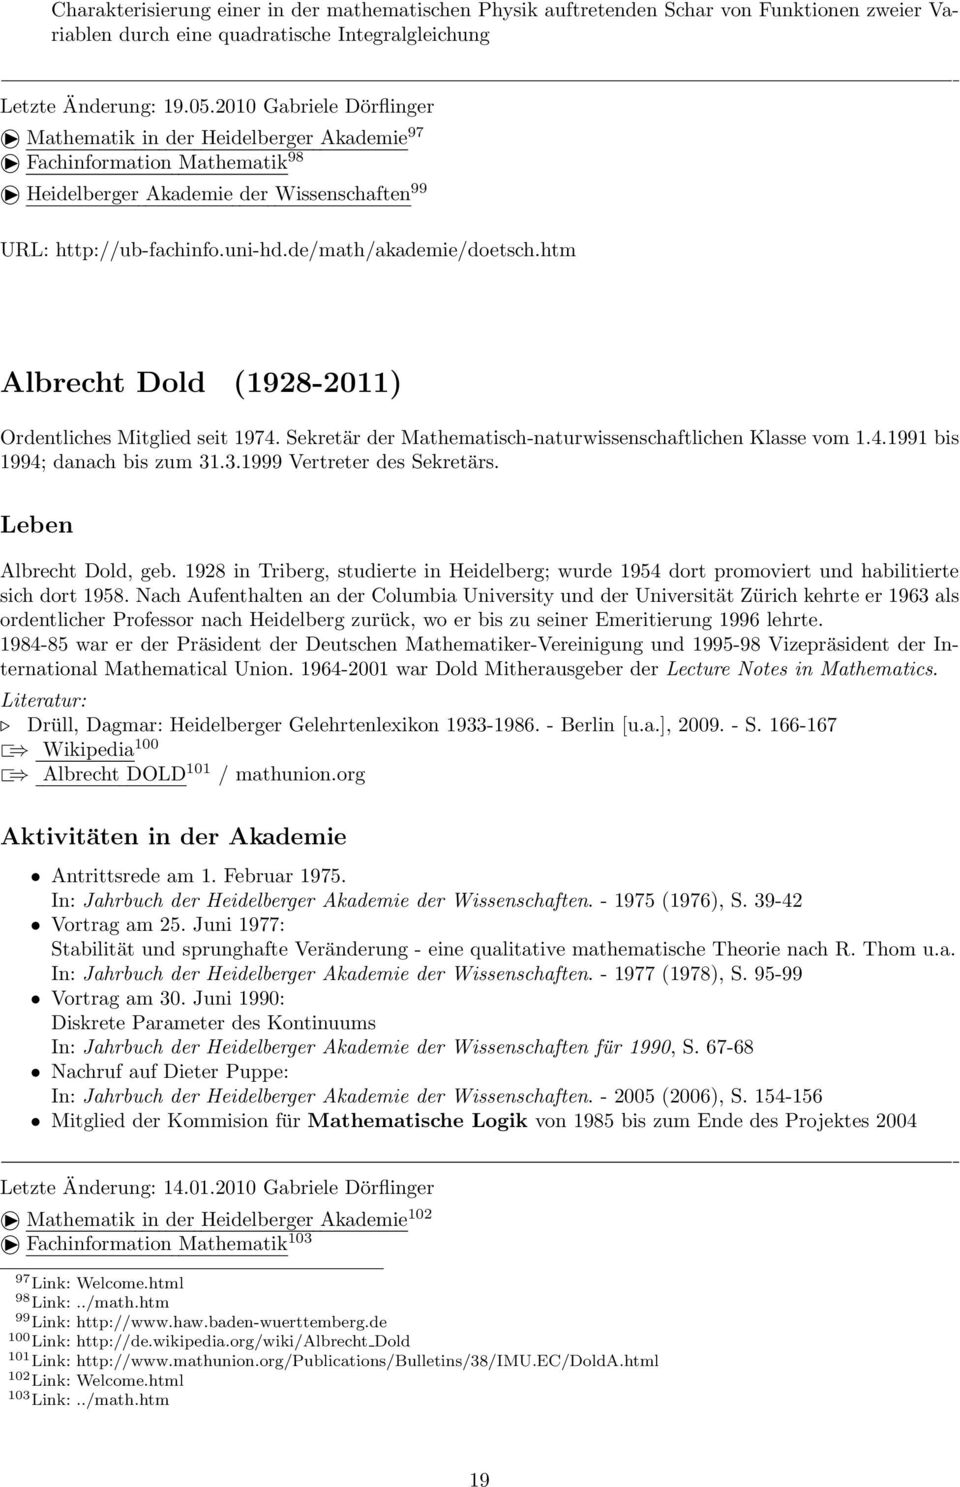 htm Albrecht Dold (1928-2011) Ordentliches Mitglied seit 1974. Sekretär der Mathematisch-naturwissenschaftlichen Klasse vom 1.4.1991 bis 1994; danach bis zum 31.3.1999 Vertreter des Sekretärs.